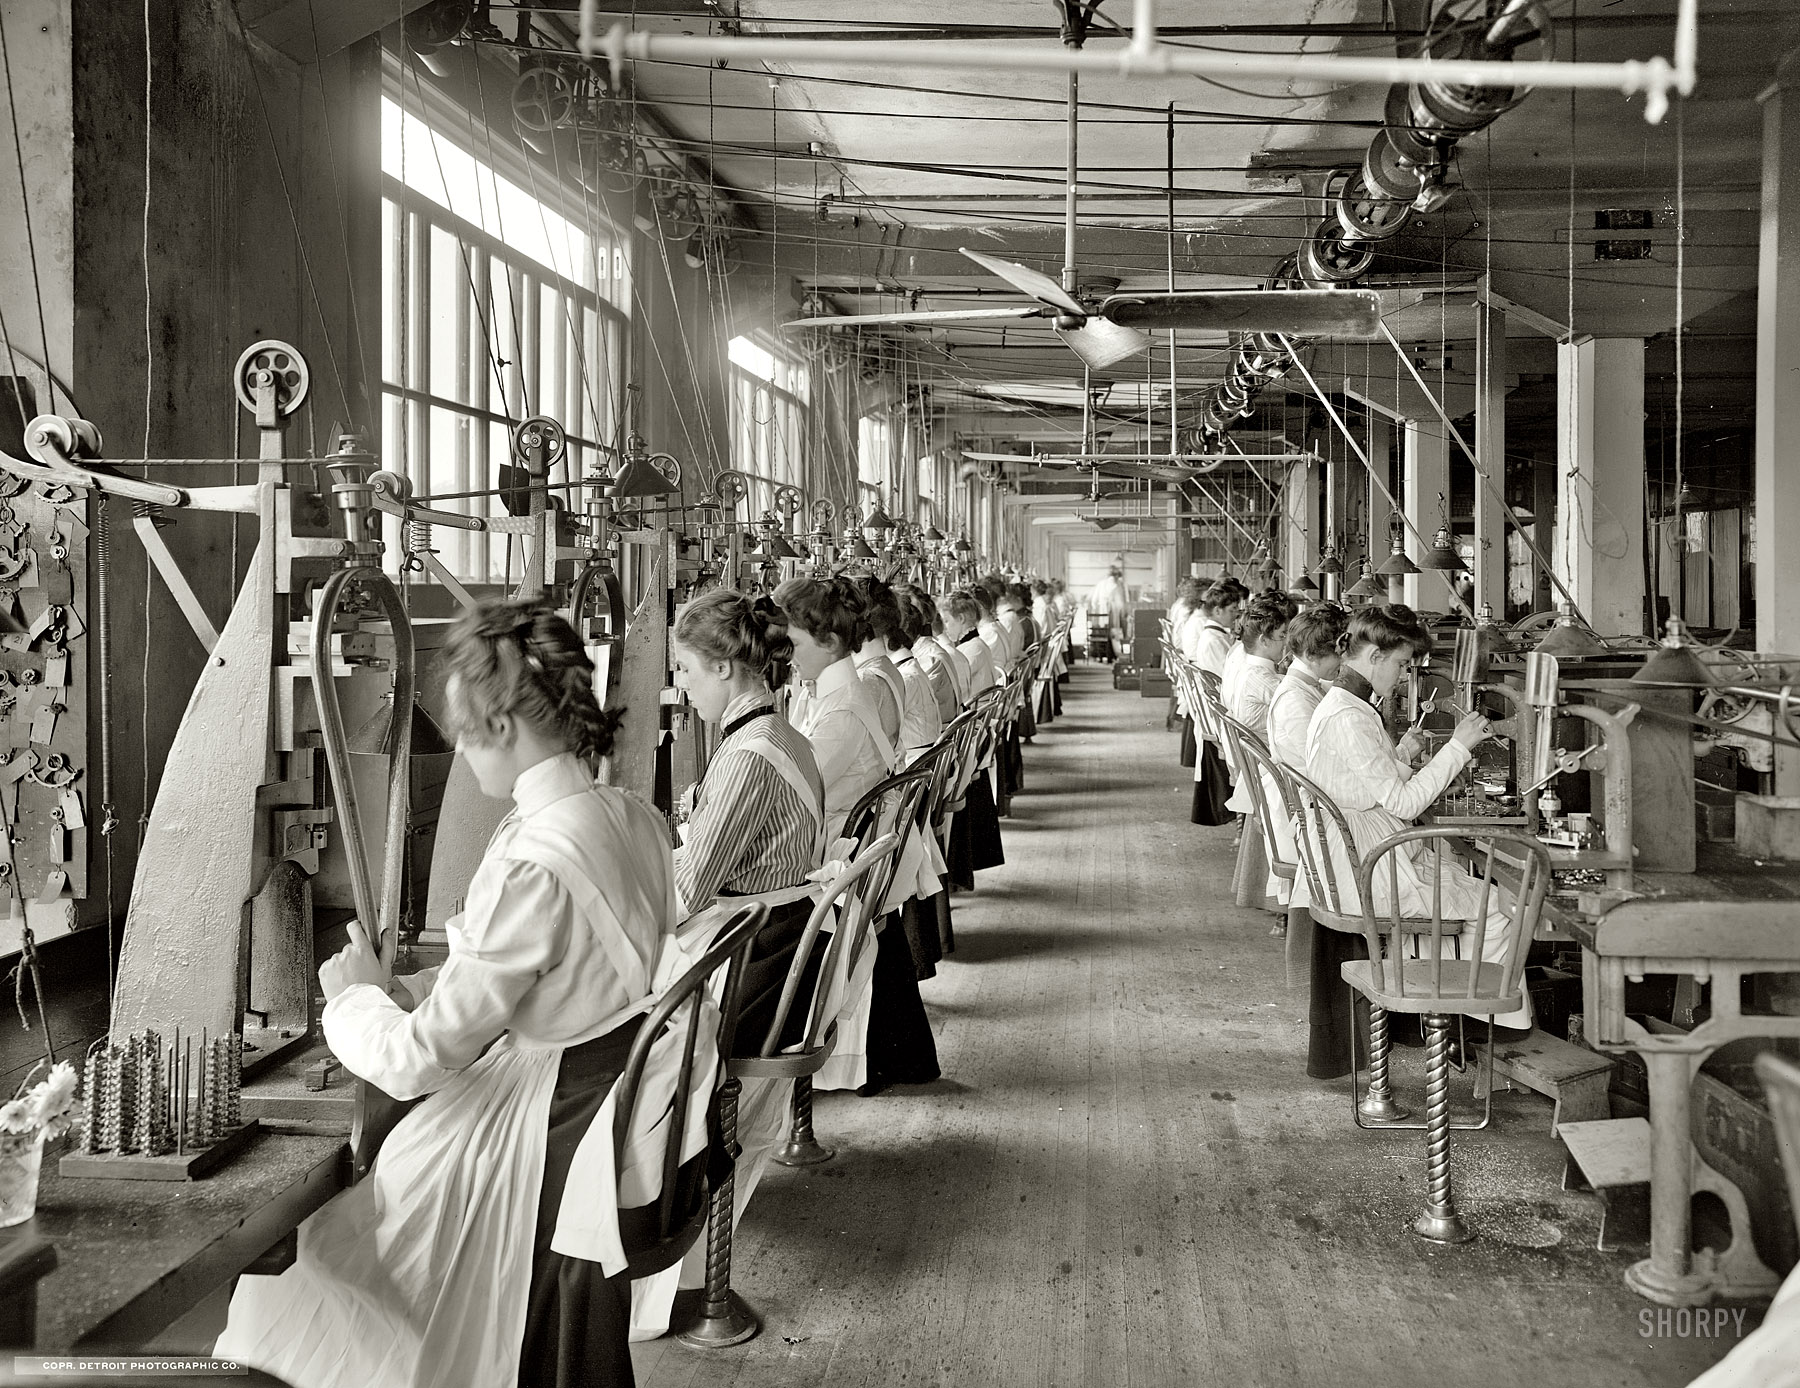 Цеховые постановки. Завод США 20 век США. Работницы на ткацкой фабрике 19 век Англия. Ткацкие фабрики в США В 18 веке. Фабрика в начале 20 века в США.